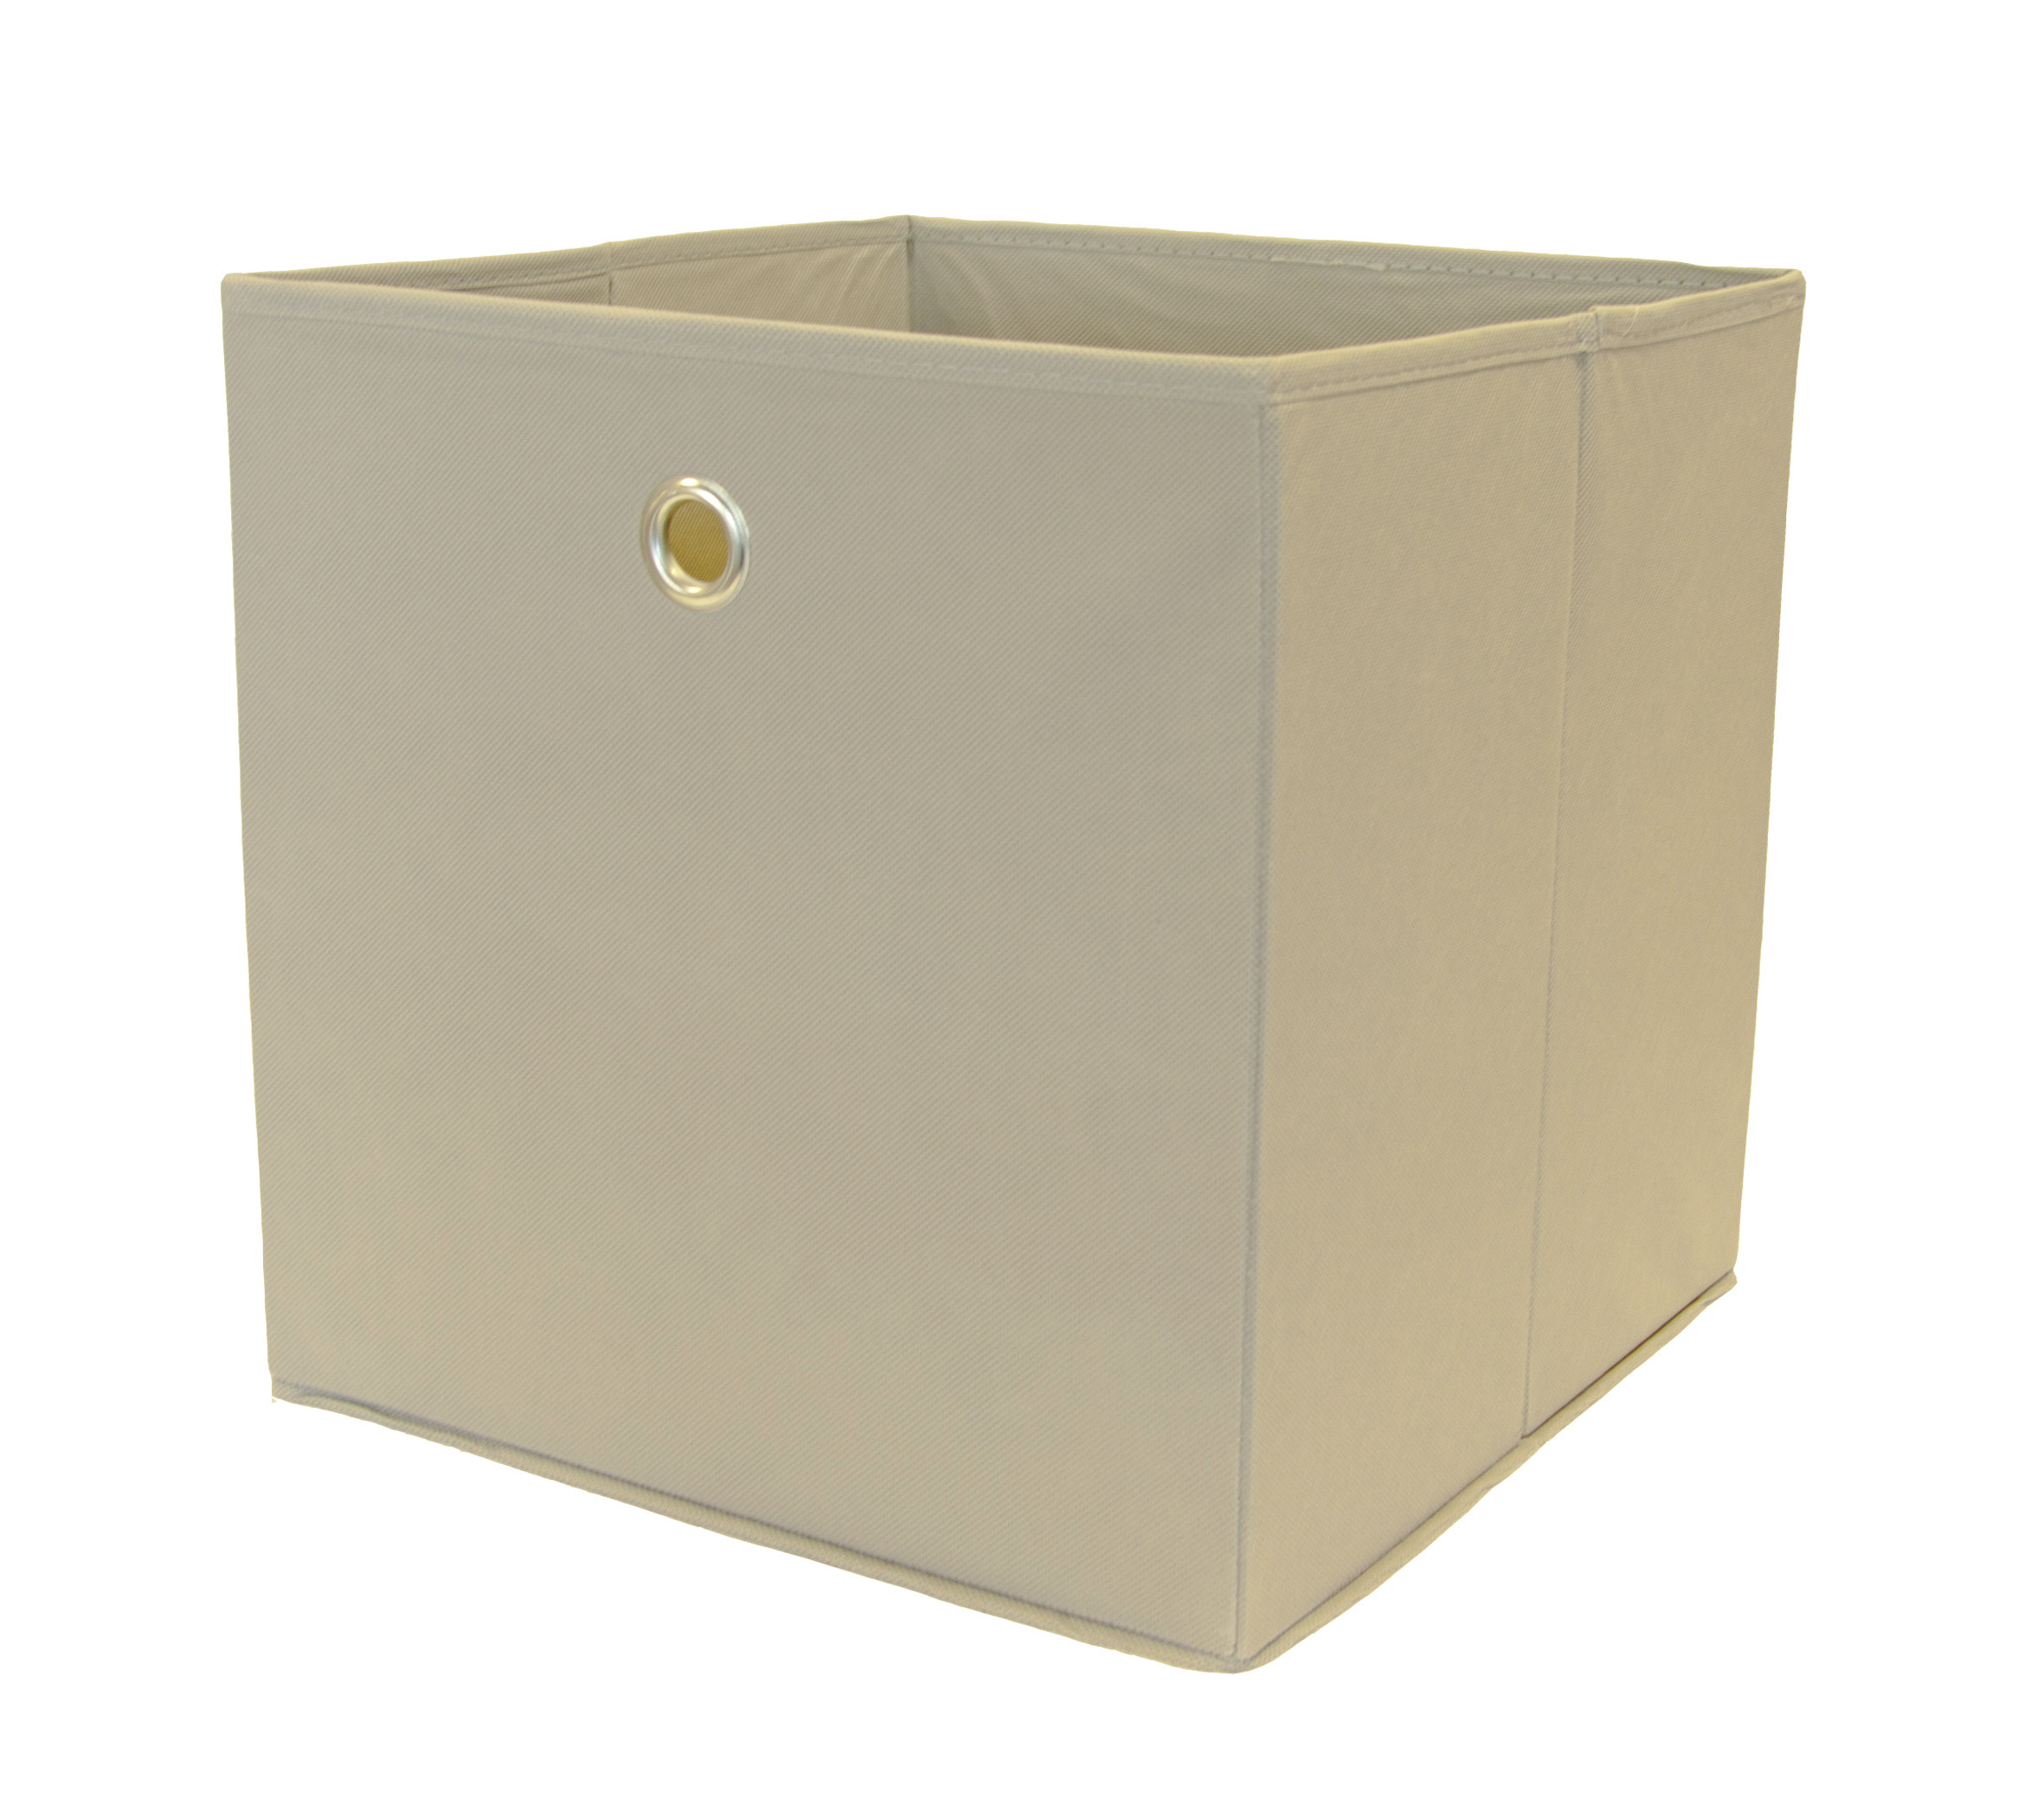 Aufbewahrungsbox / Faltbox 2-er Set grau